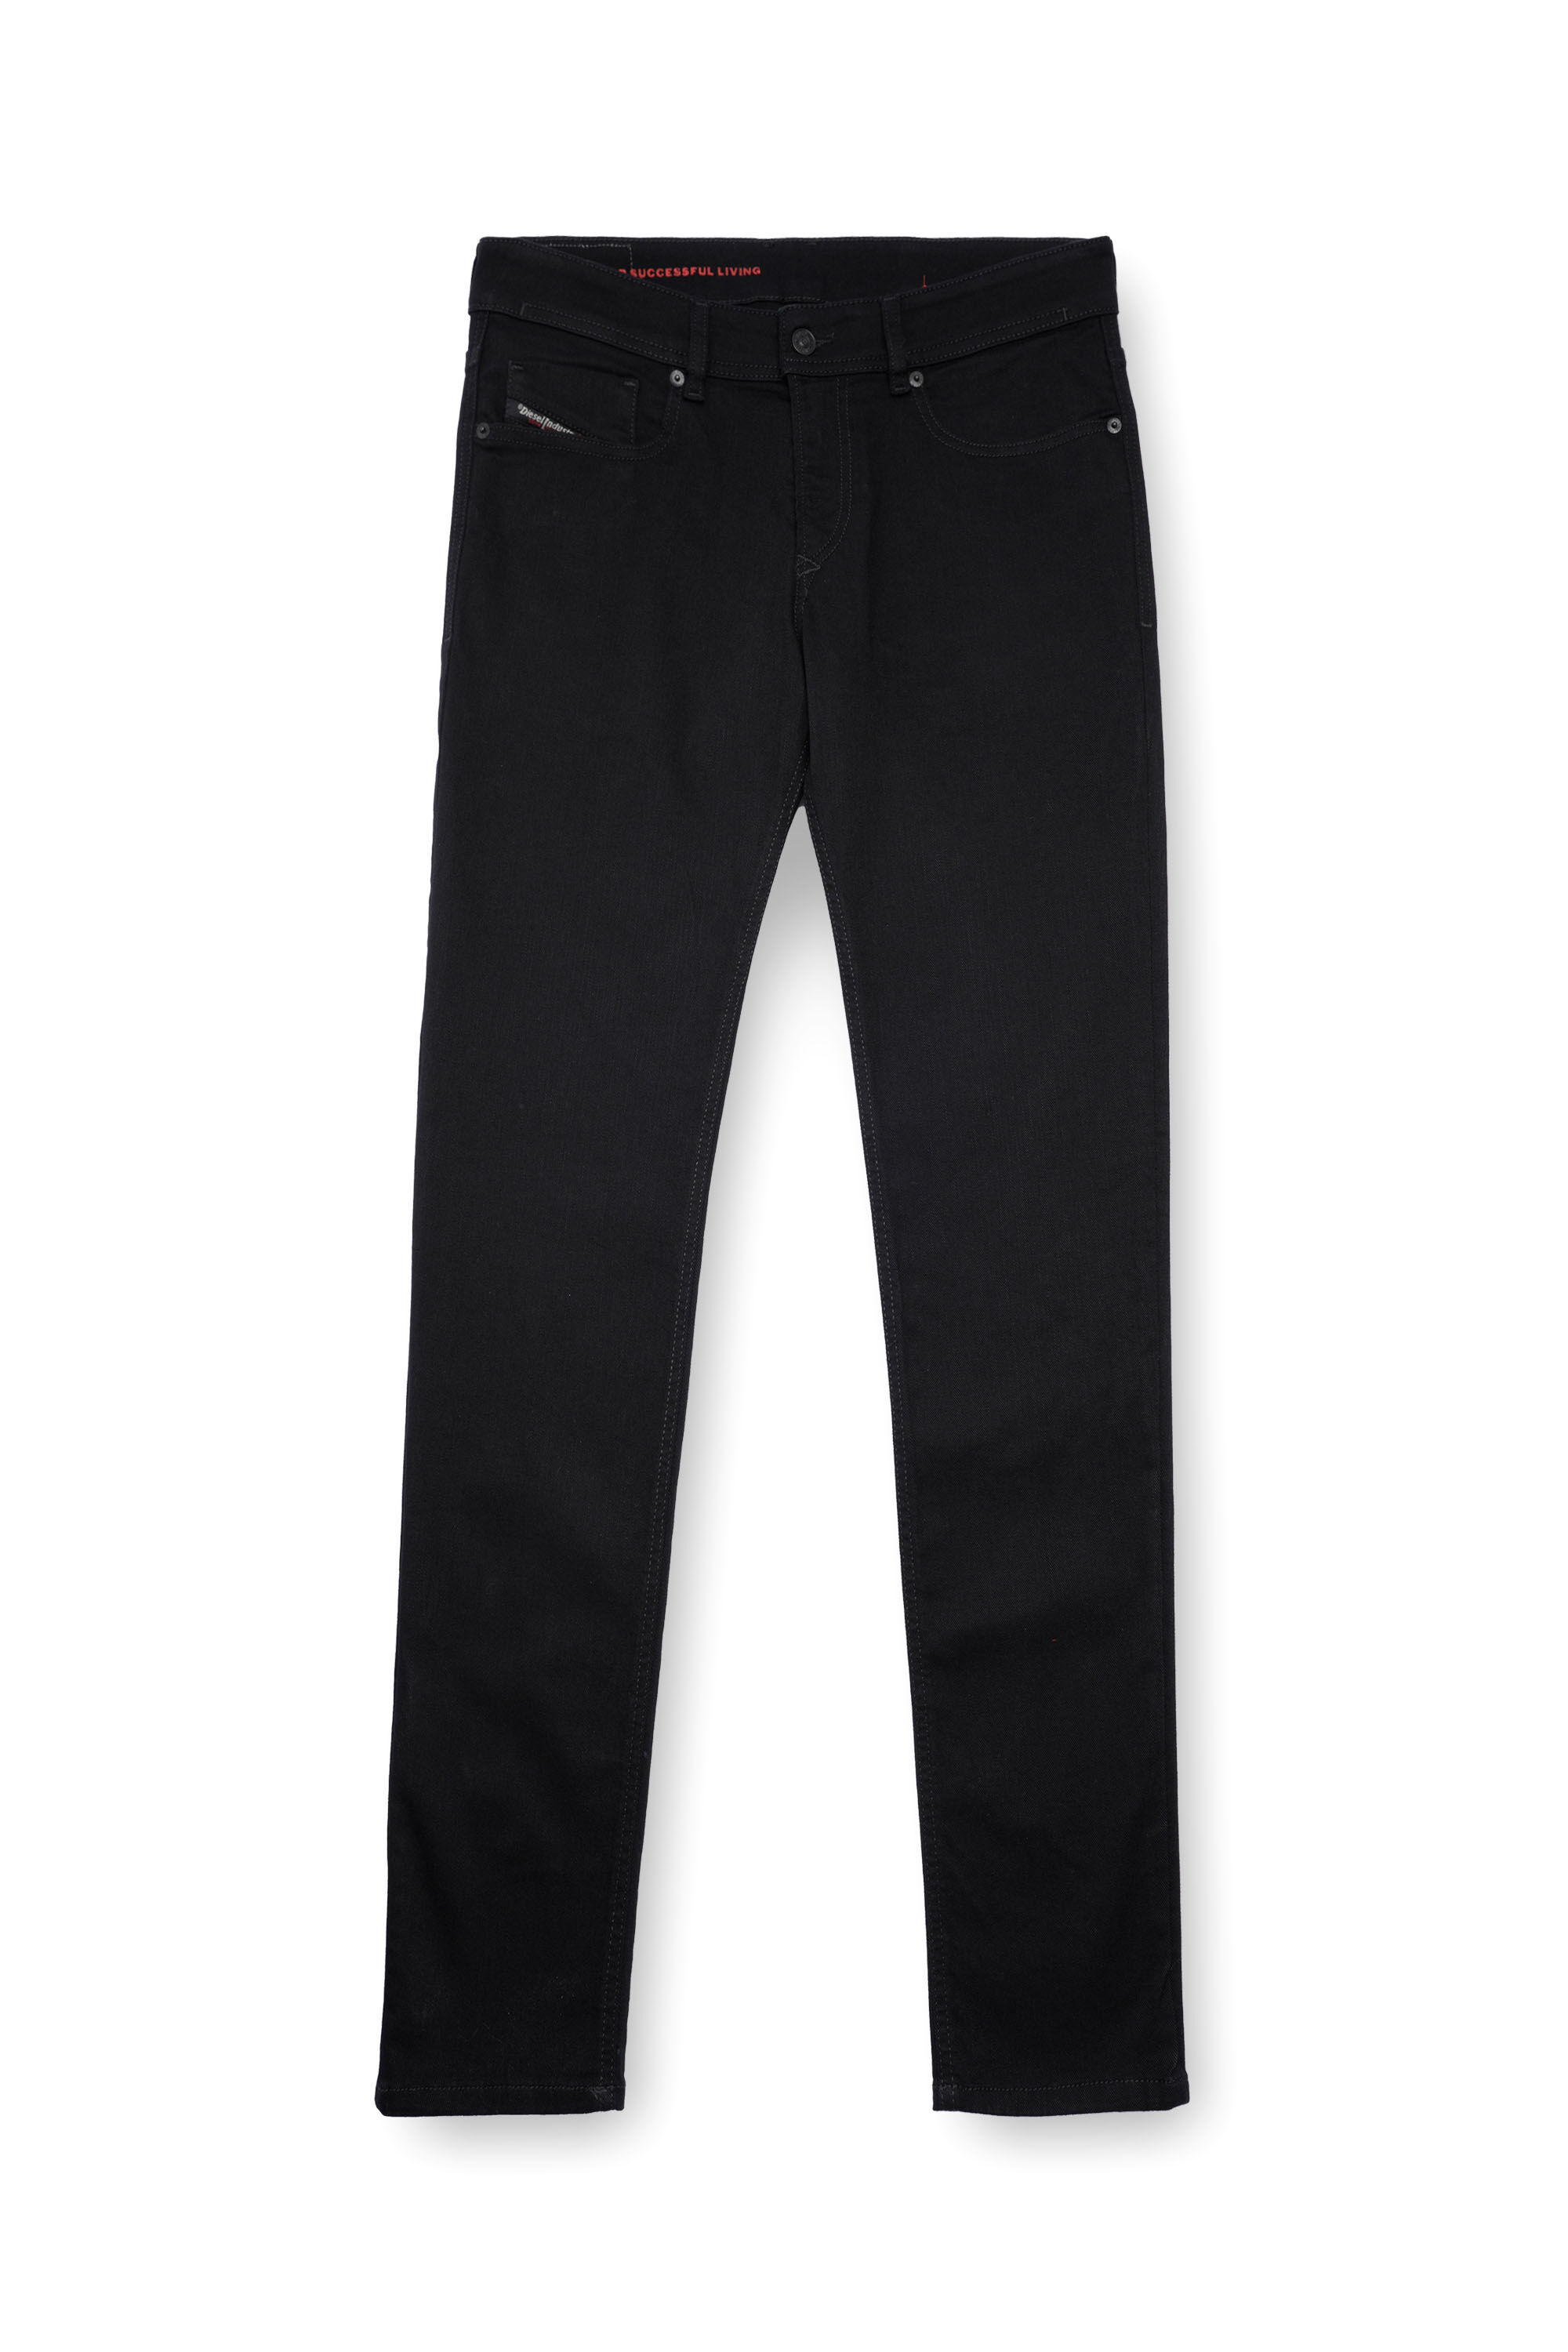 Diesel - Man Skinny Jeans 1979 Sleenker 09C51, Black/Dark grey - Image 2